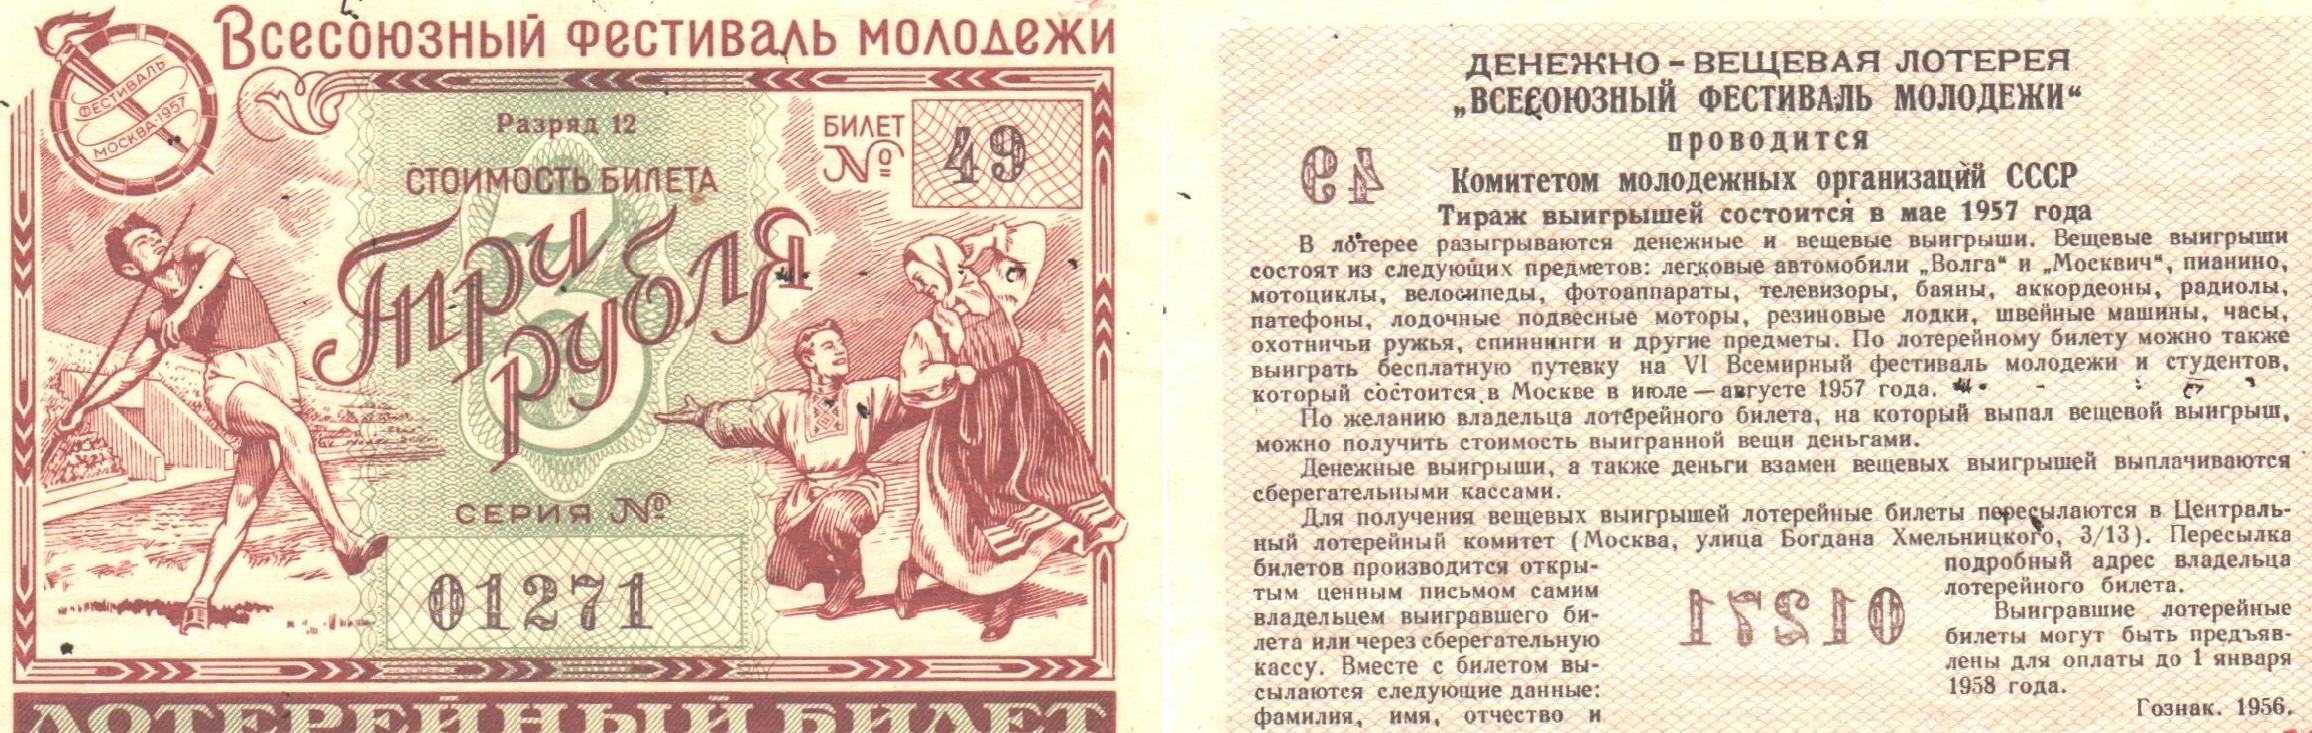 Лотерейный билет номер 67. Лотерейный билет. Денежно-вещевая лотерея. Лотерейный билет 1956 года. Денежно-вещевая лотерея СССР.